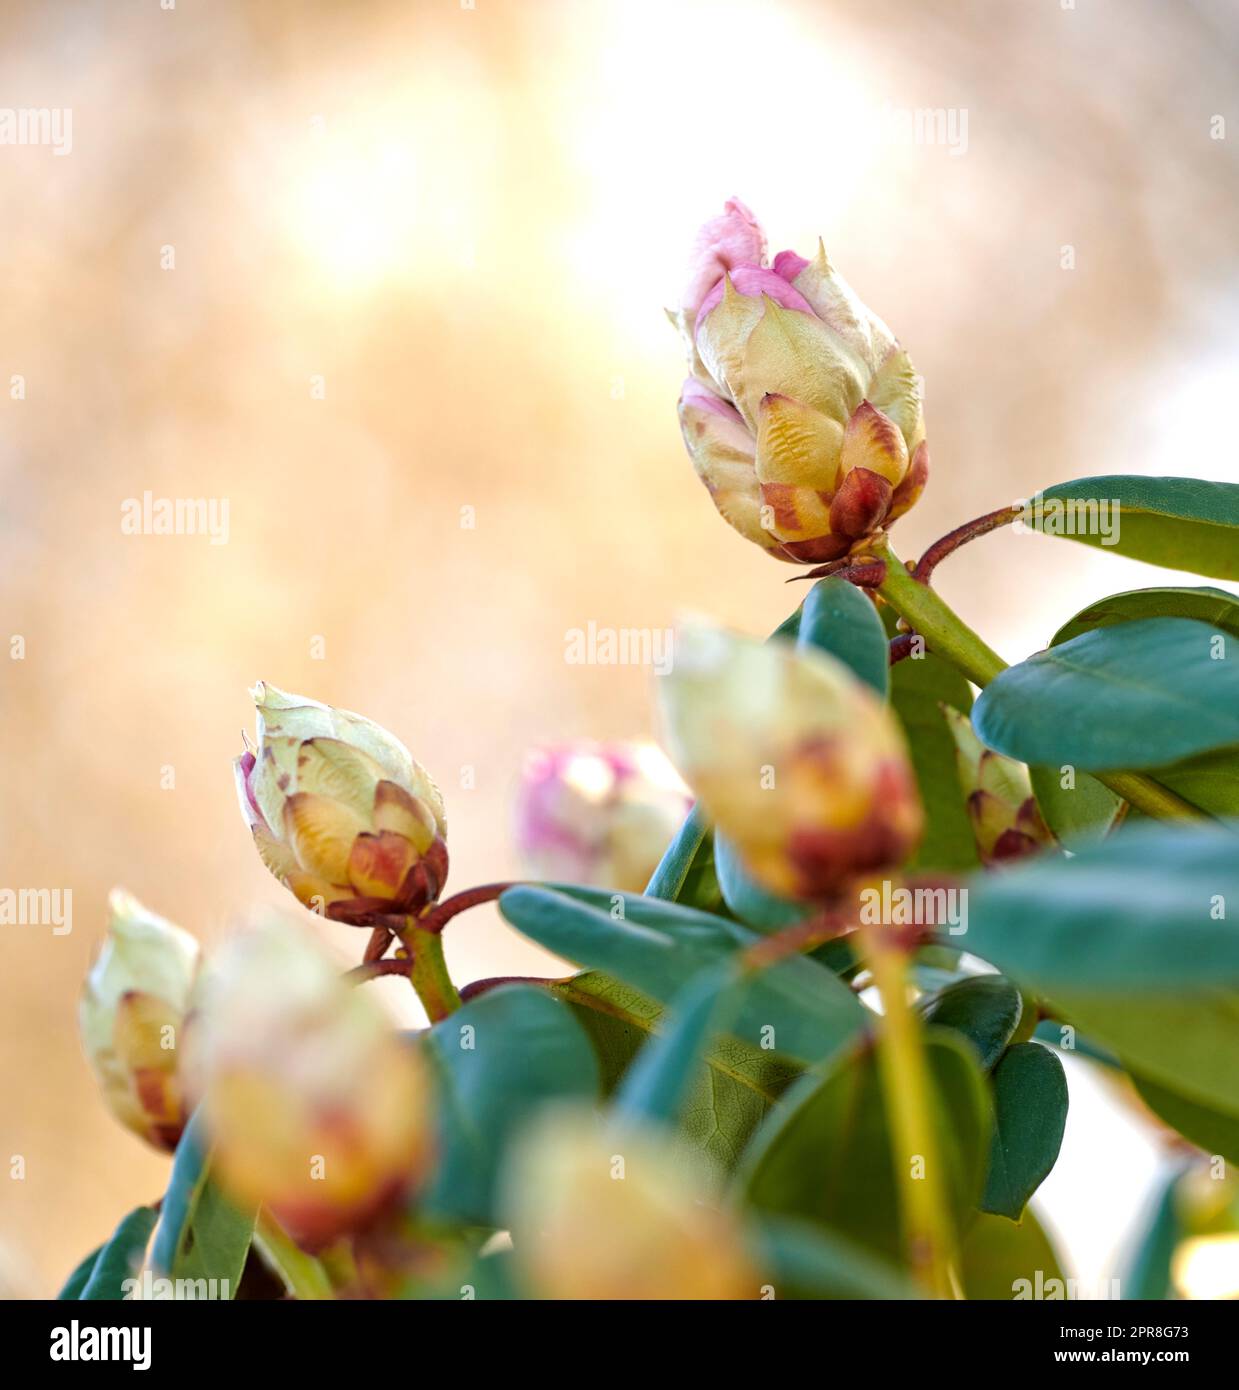 Le Rhododendron est un genre de 1 024 espèces de plantes ligneuses de la famille des hémates, à feuilles persistantes ou à feuilles caduques, qui se trouve principalement en Asie, bien qu'il soit également répandu dans les hautes-terres méridionales des Appalaches d'Amérique du Nord. Banque D'Images